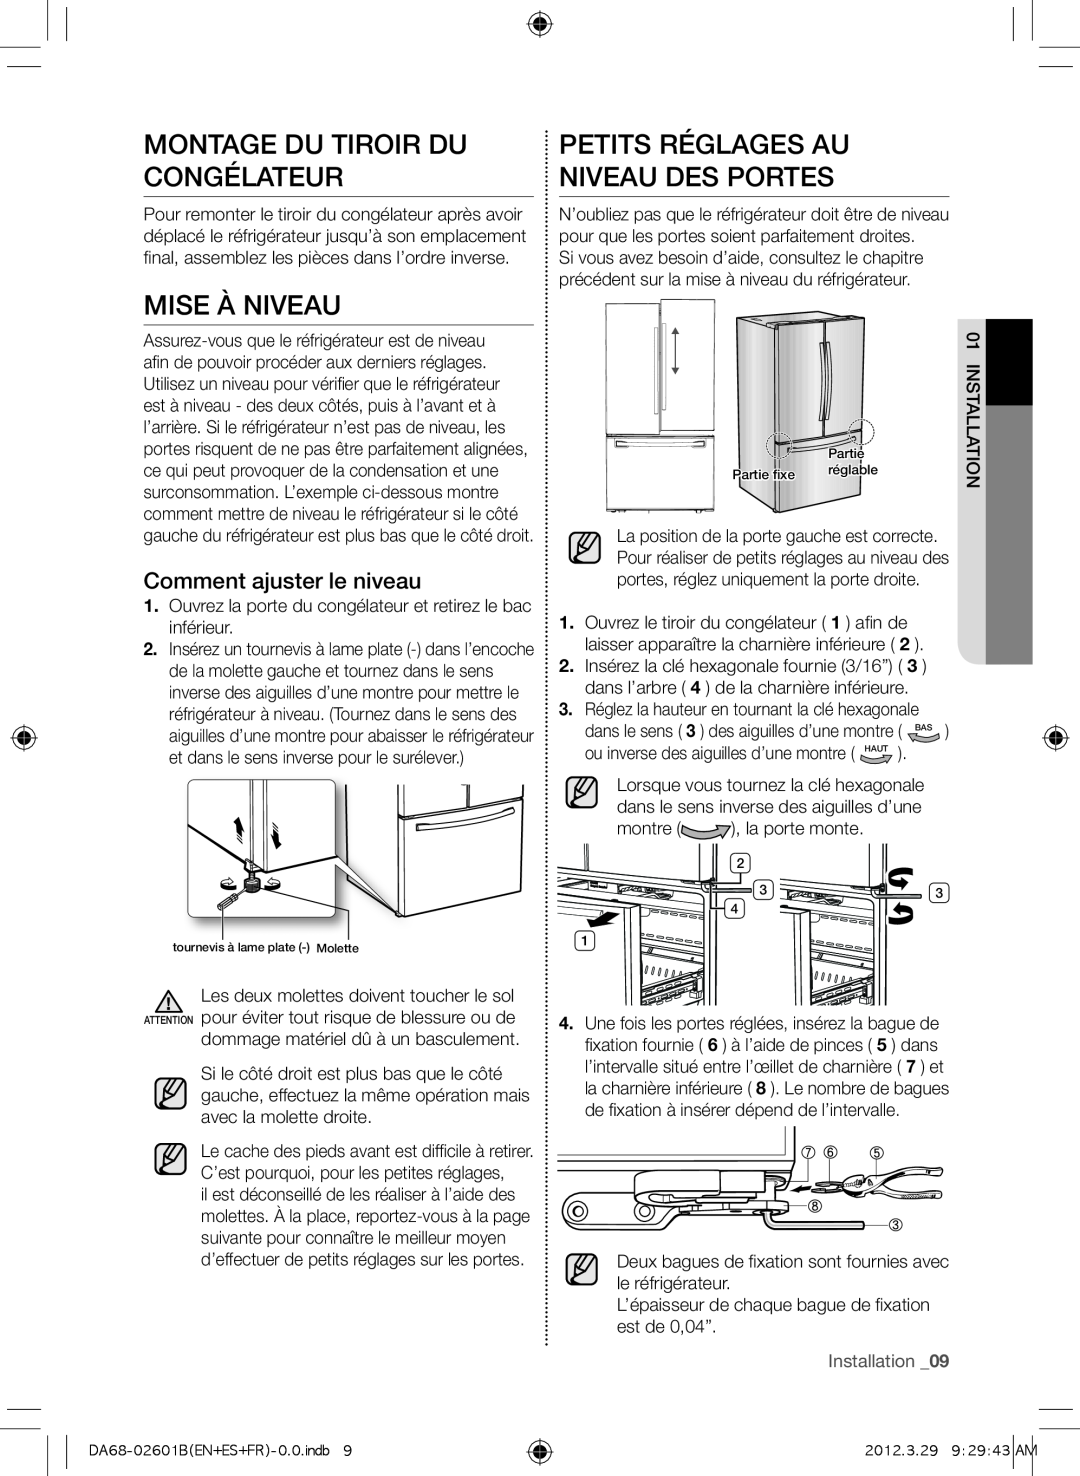 Samsung RF261BEAEBC, GI6FARXXQ Montage du tiroir du congélateur, Mise à niveau, Petits réglages au niveau des portes 